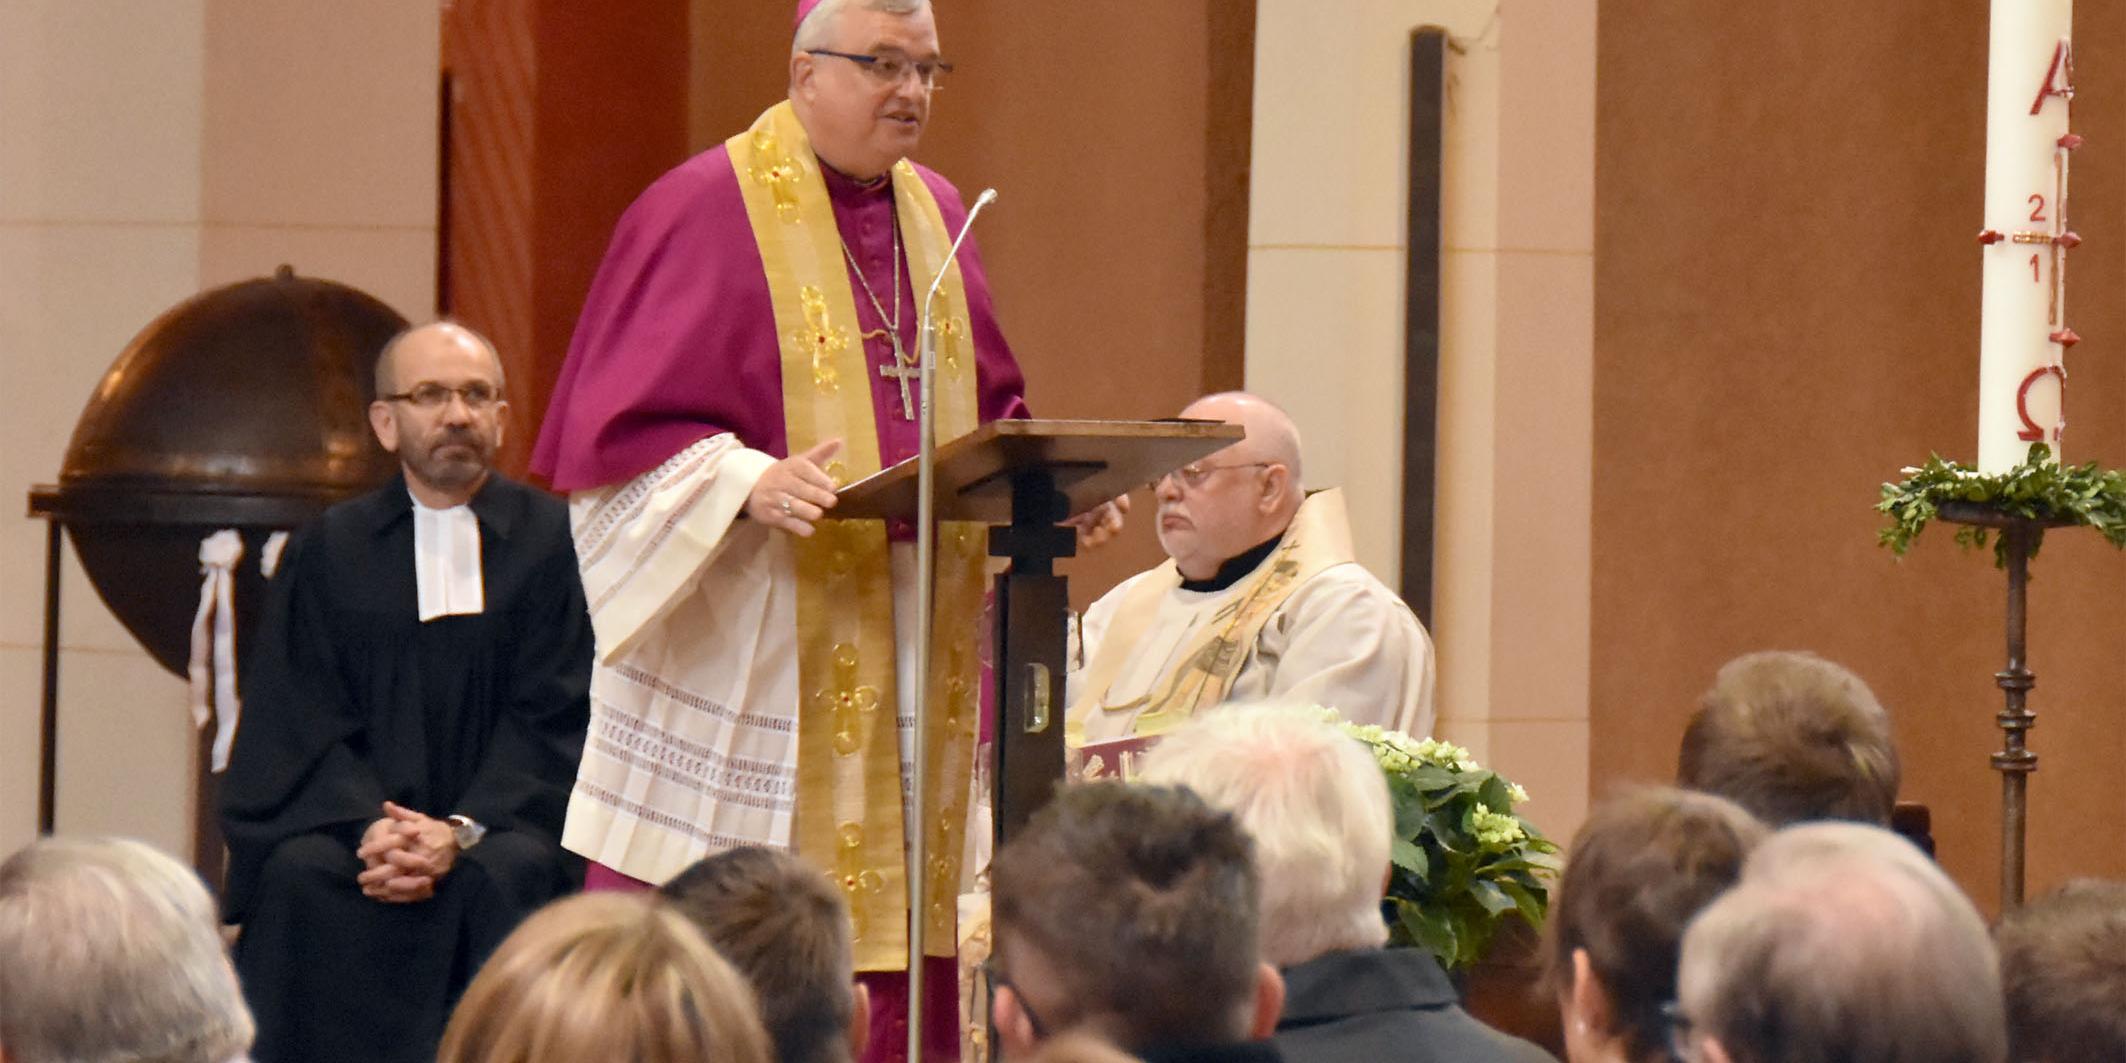 Bischof Dr. Karl-Heinz Wiesemann, Bischof von Speyer während der Predigt. Hinter ihm sitzen Präses Rekowski (l.) und Prälat Prassel (r.)